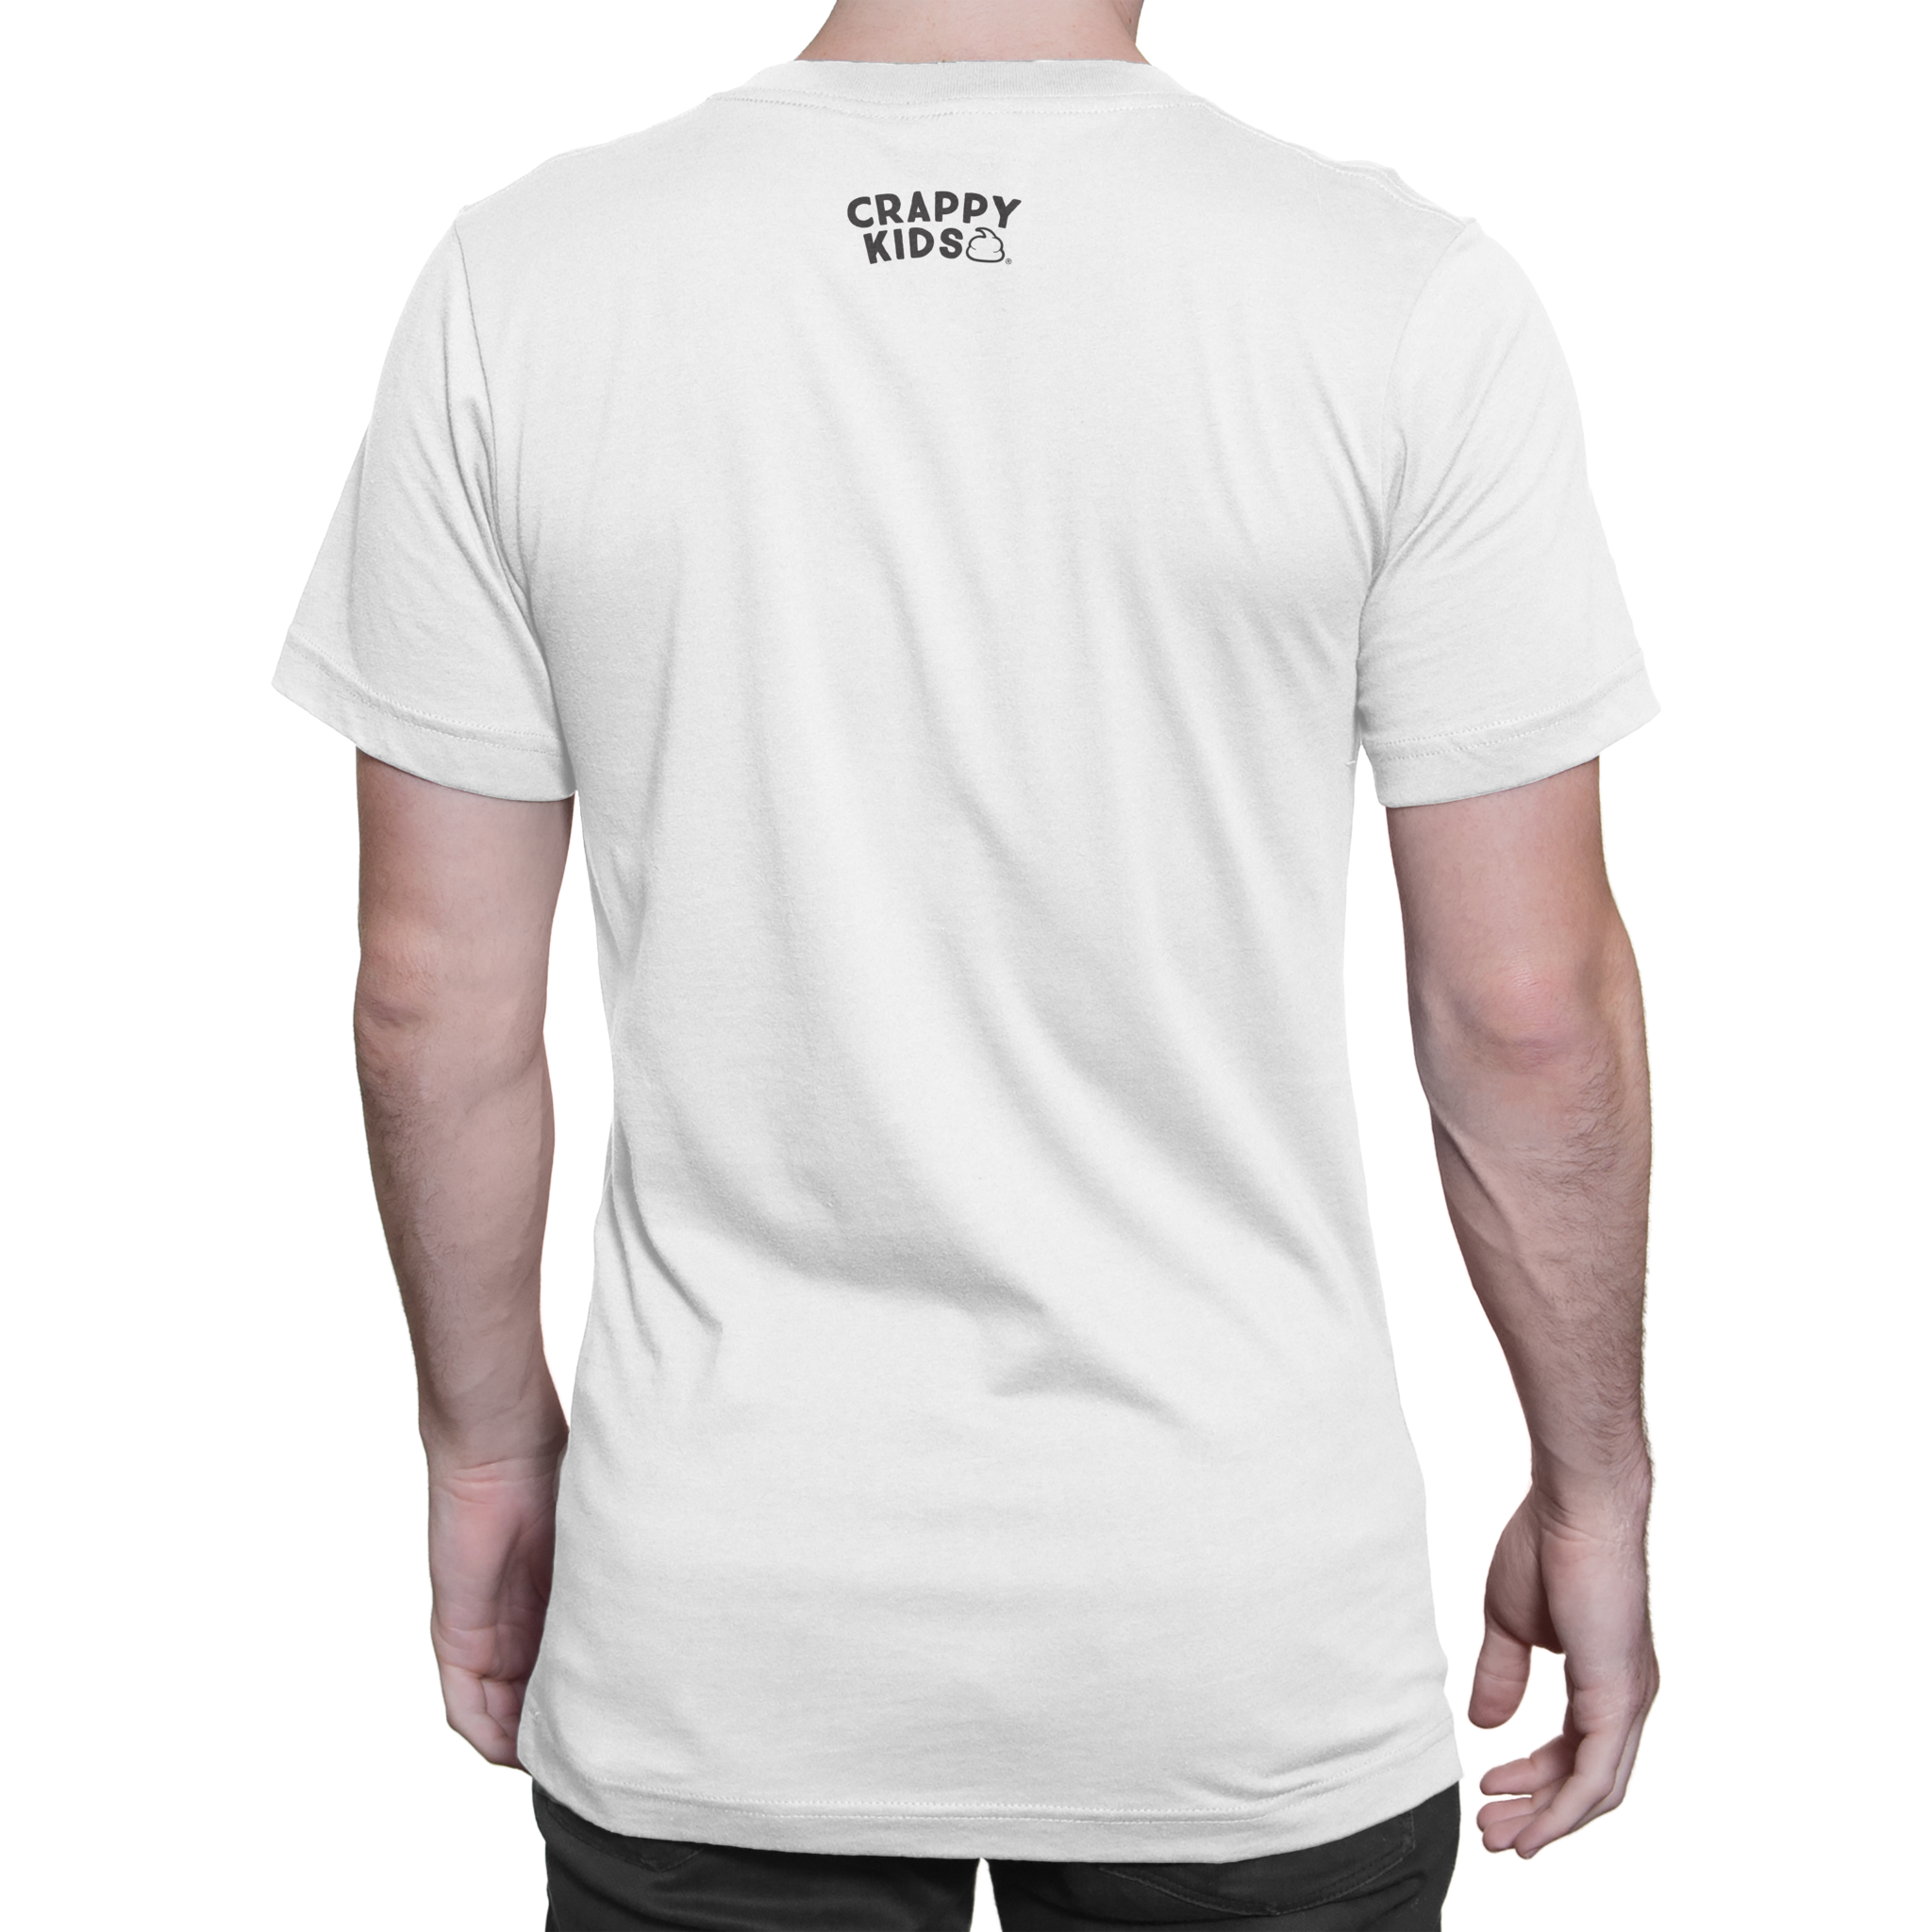 Blink-180 Poo (White) T-Shirt